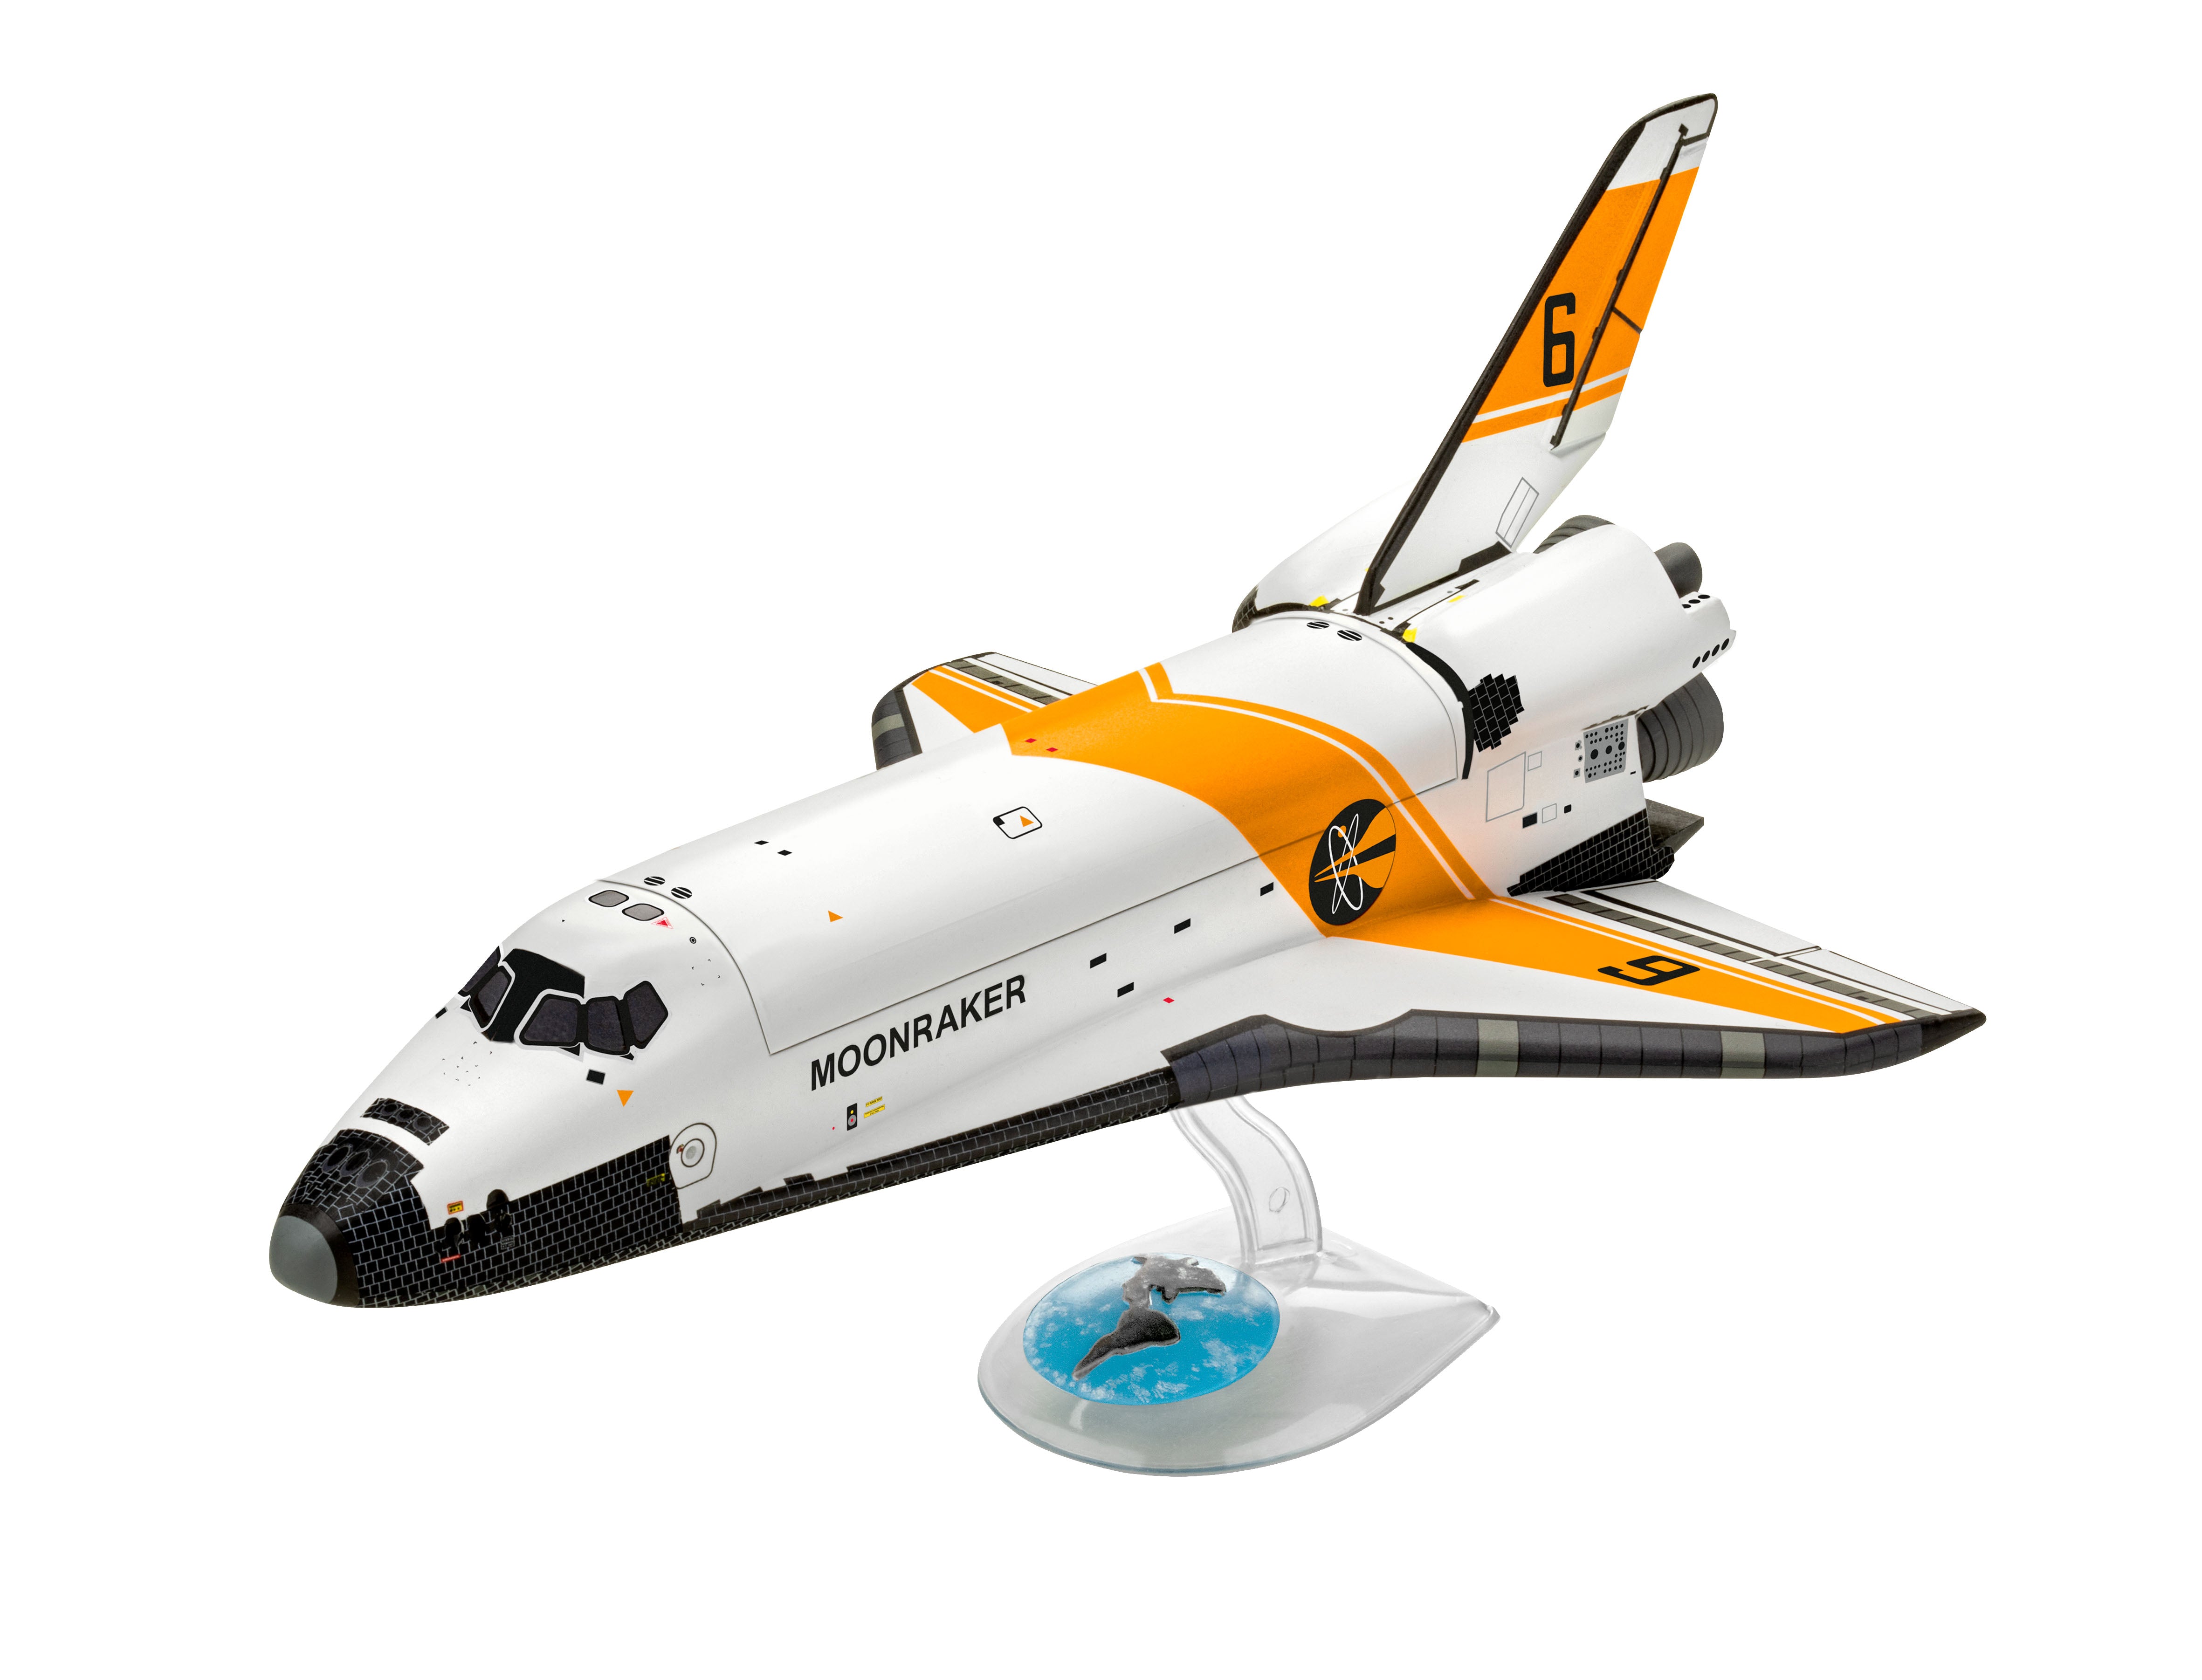 Moonraker Space Shuttle 1:144 Scale Kit